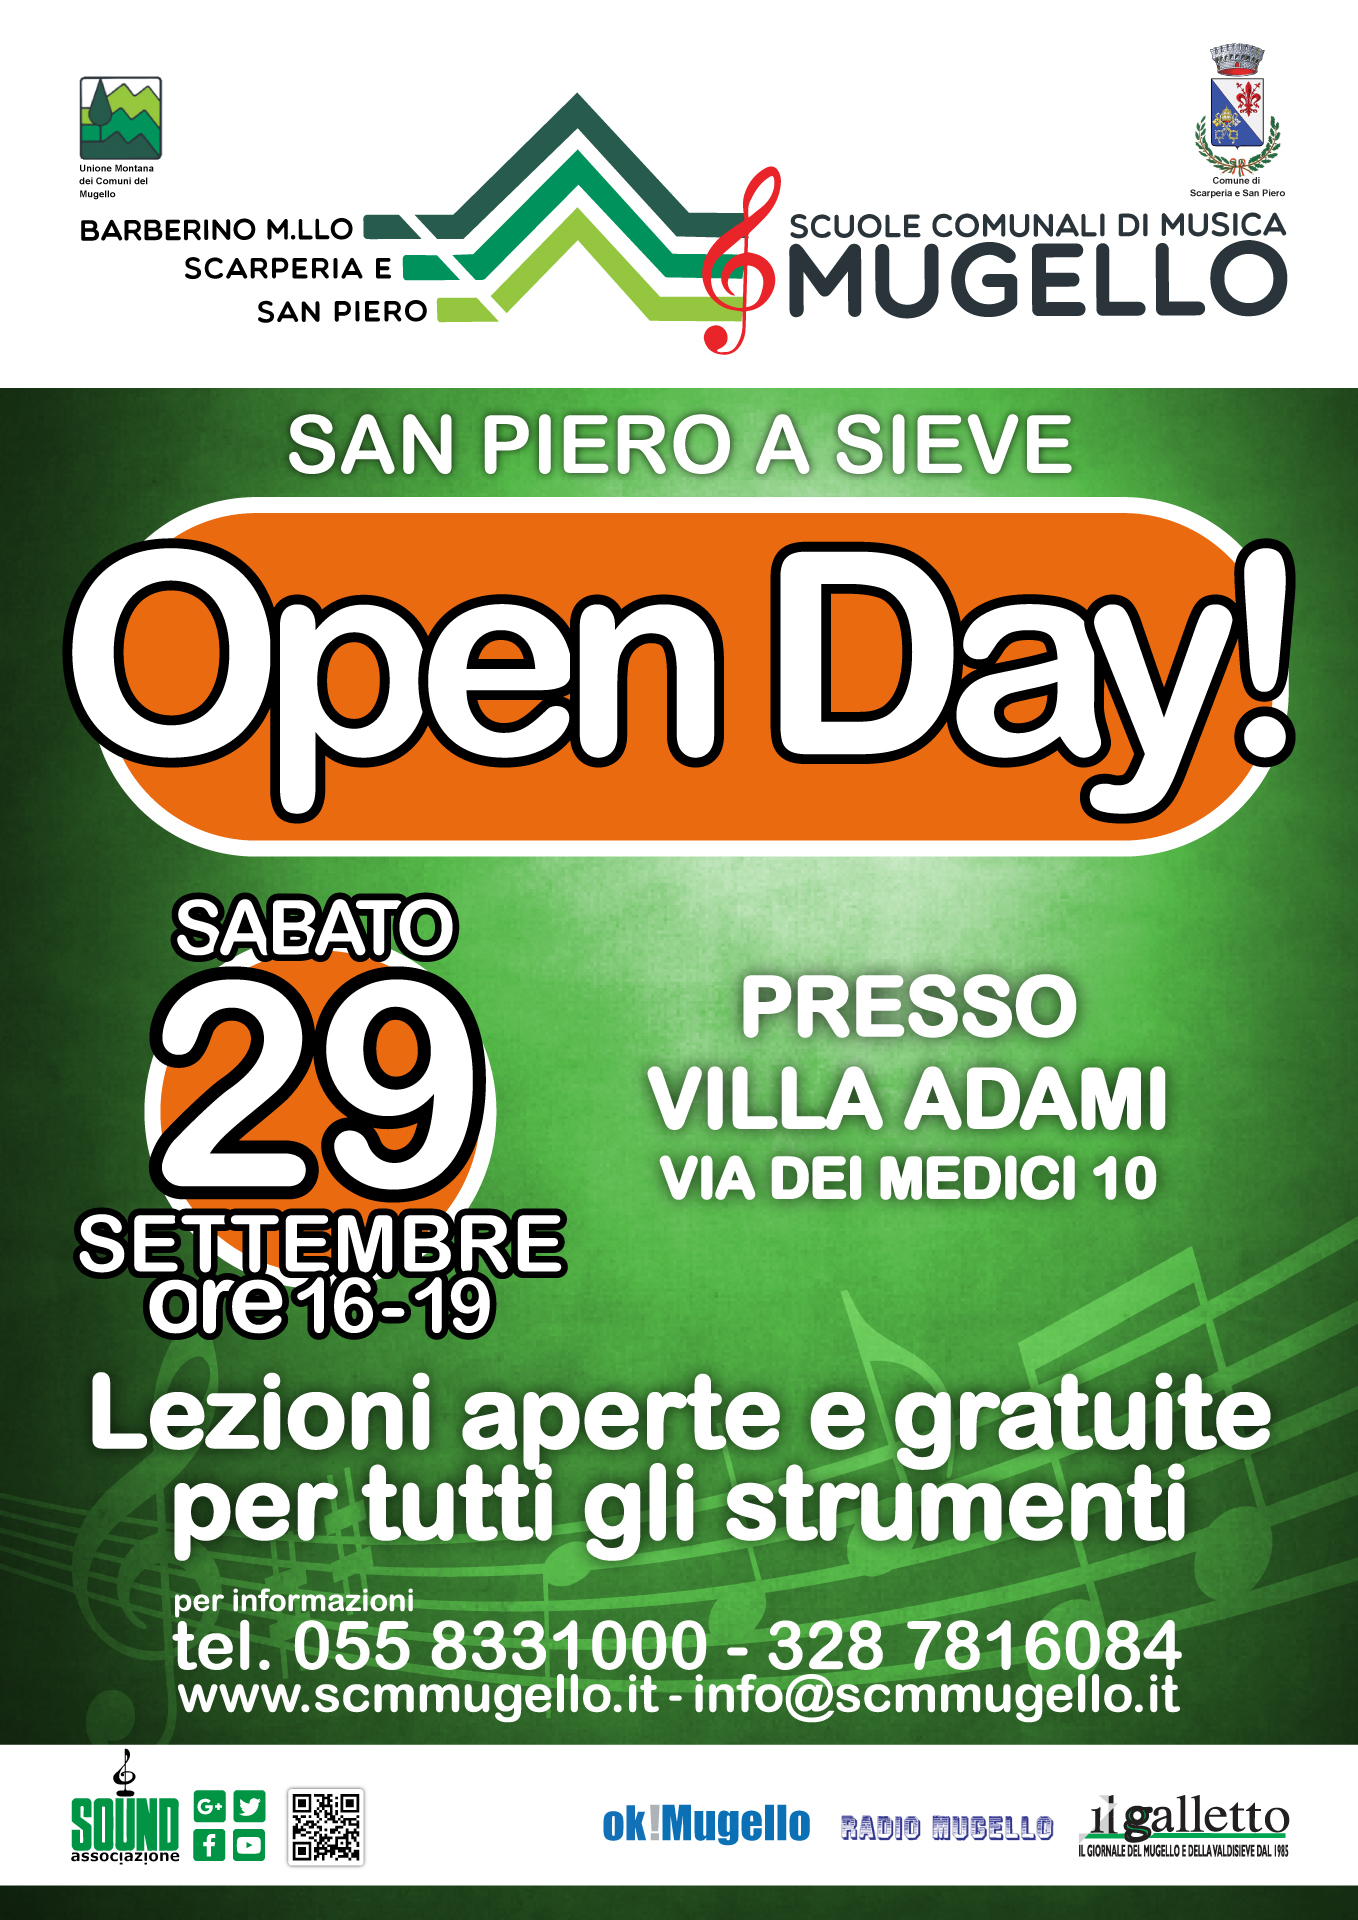 OPEN DAY SCUOLA DI MUSICA! 29 Settembre San Piero a Sieve